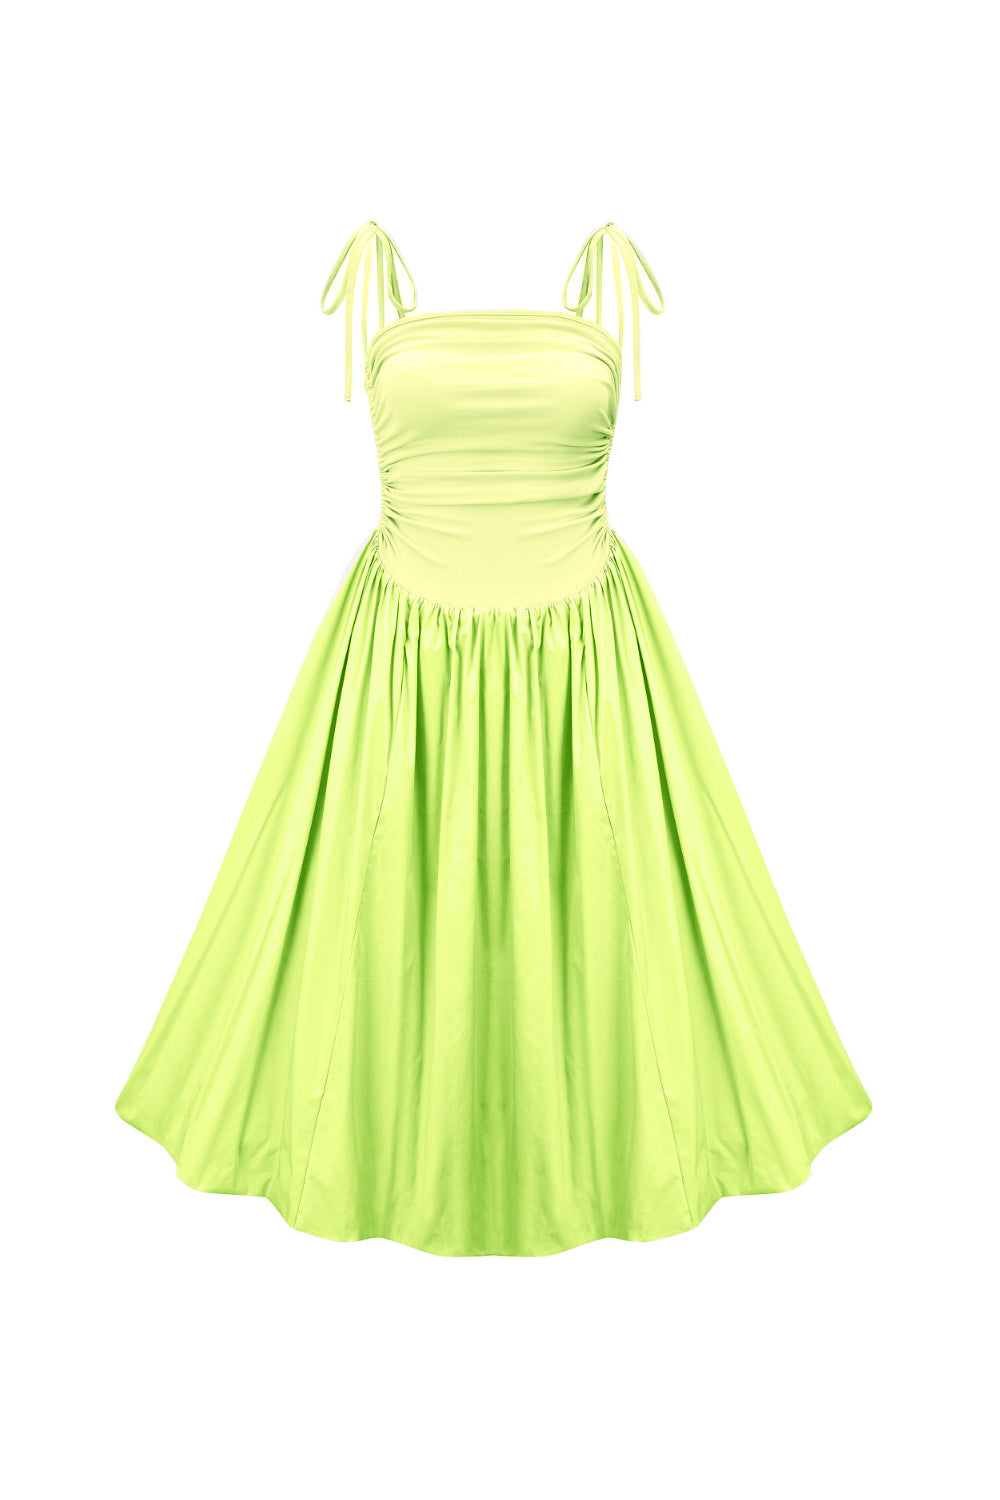 Amy Lynn Women's Alexa Lime Green Puffball Dress